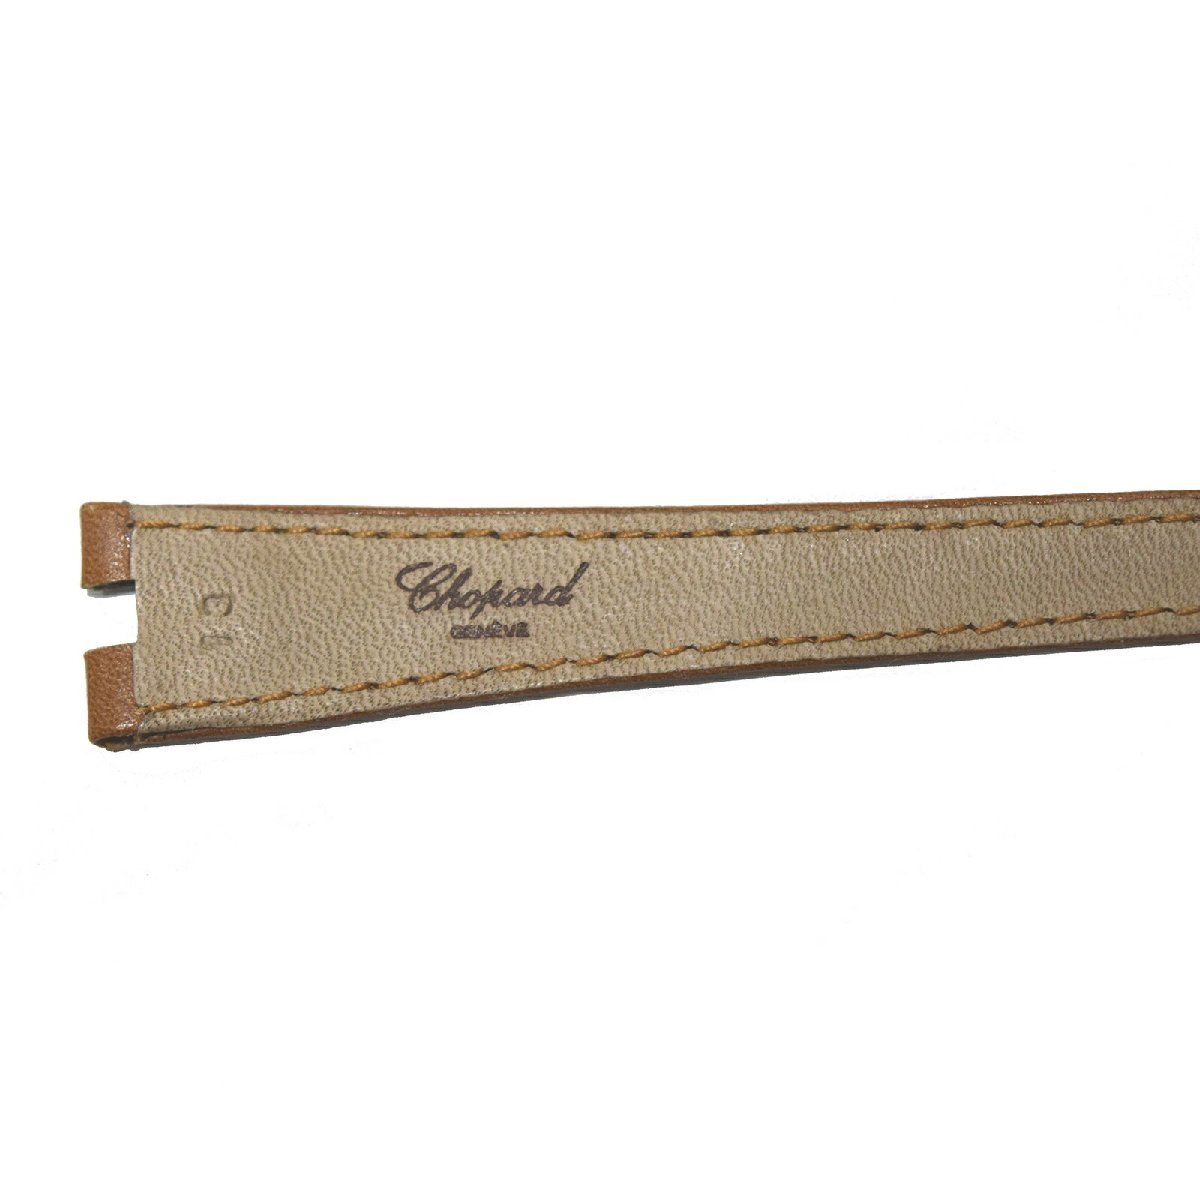  не использовался товар Chopard Chopard оригинальный кожаный ремень женский часы ремень 